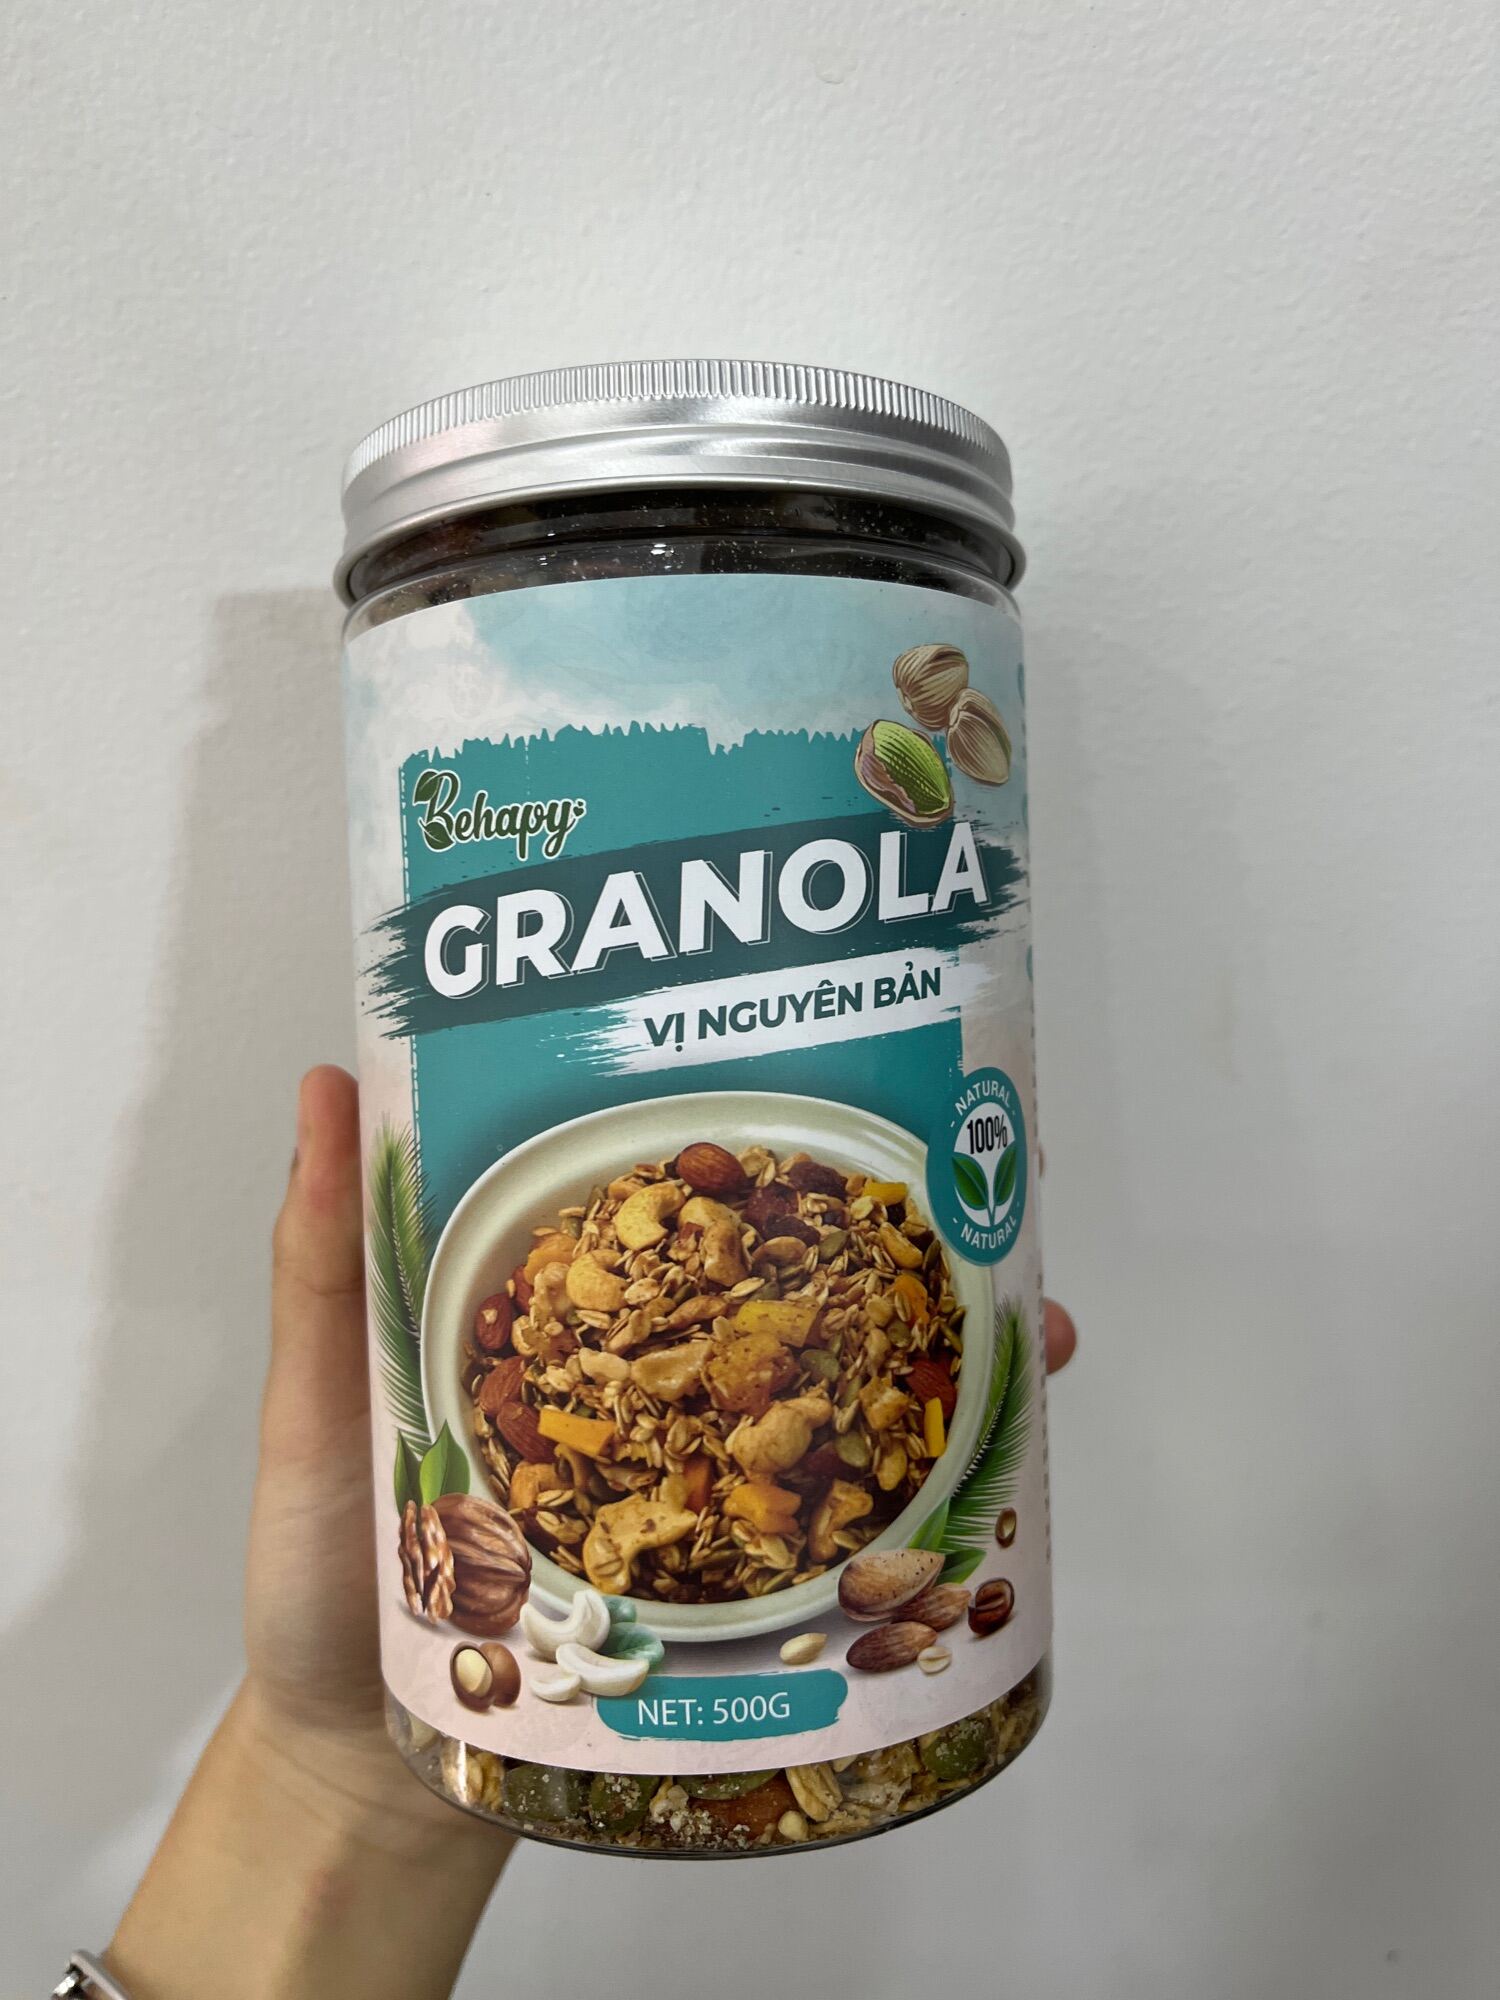 HCM Granola siêu hạt ăn vặt Behapy 5% Yến Mạch đủ 3 Vị Tốt Cho Giảm Cân